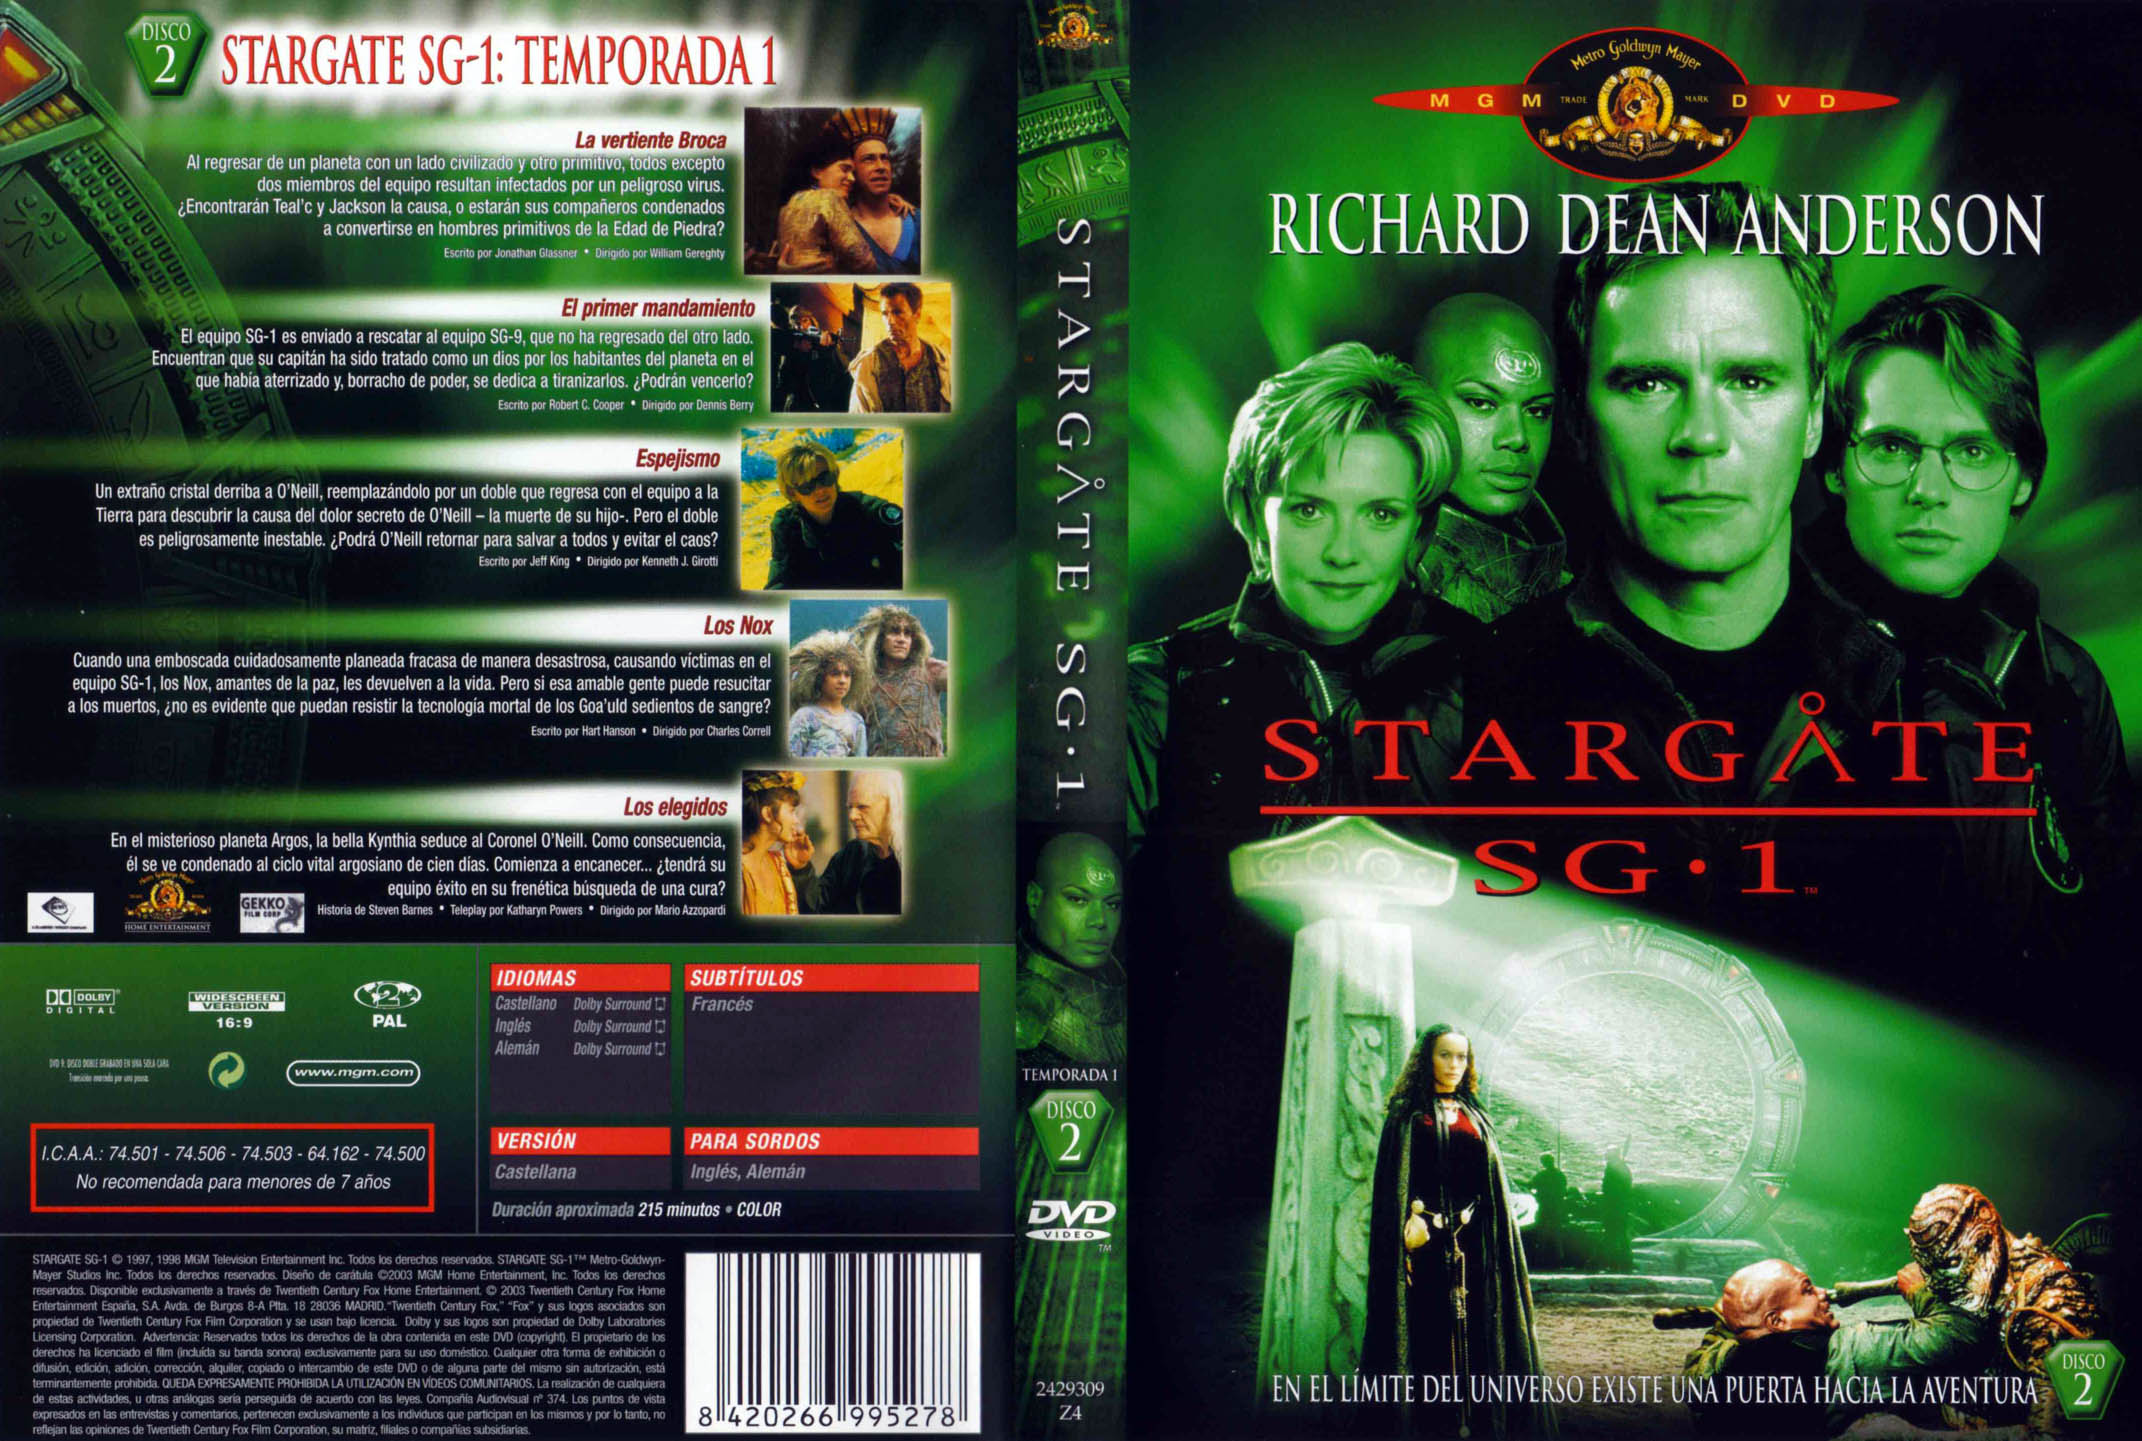 Stargate SG1 Stagioni 6-7-8 Complete - Tutti i Torrent [DVDrip I